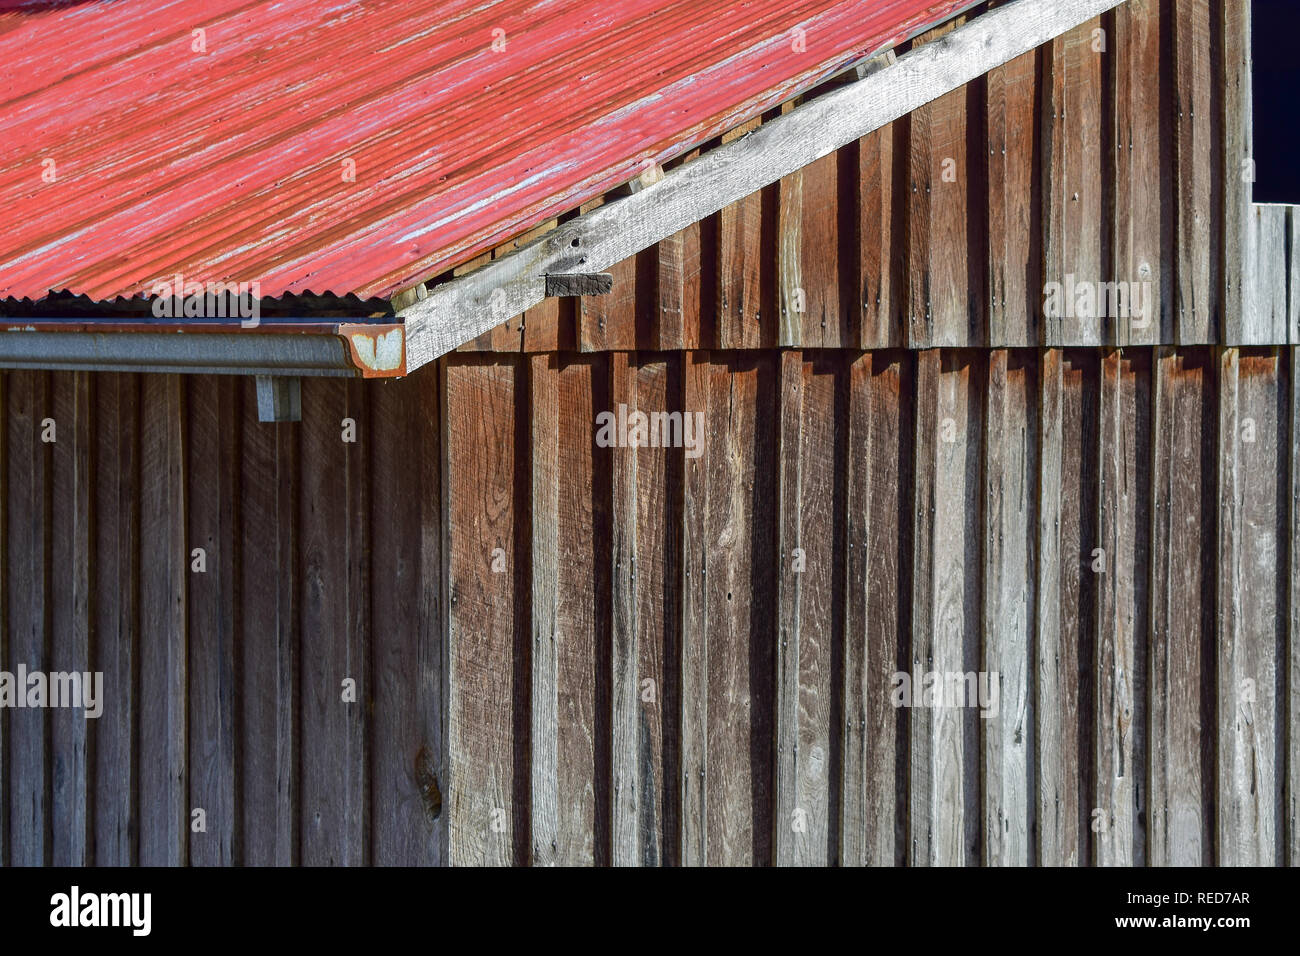 Toit de tôle rouge sur une grange, close-up view Banque D'Images